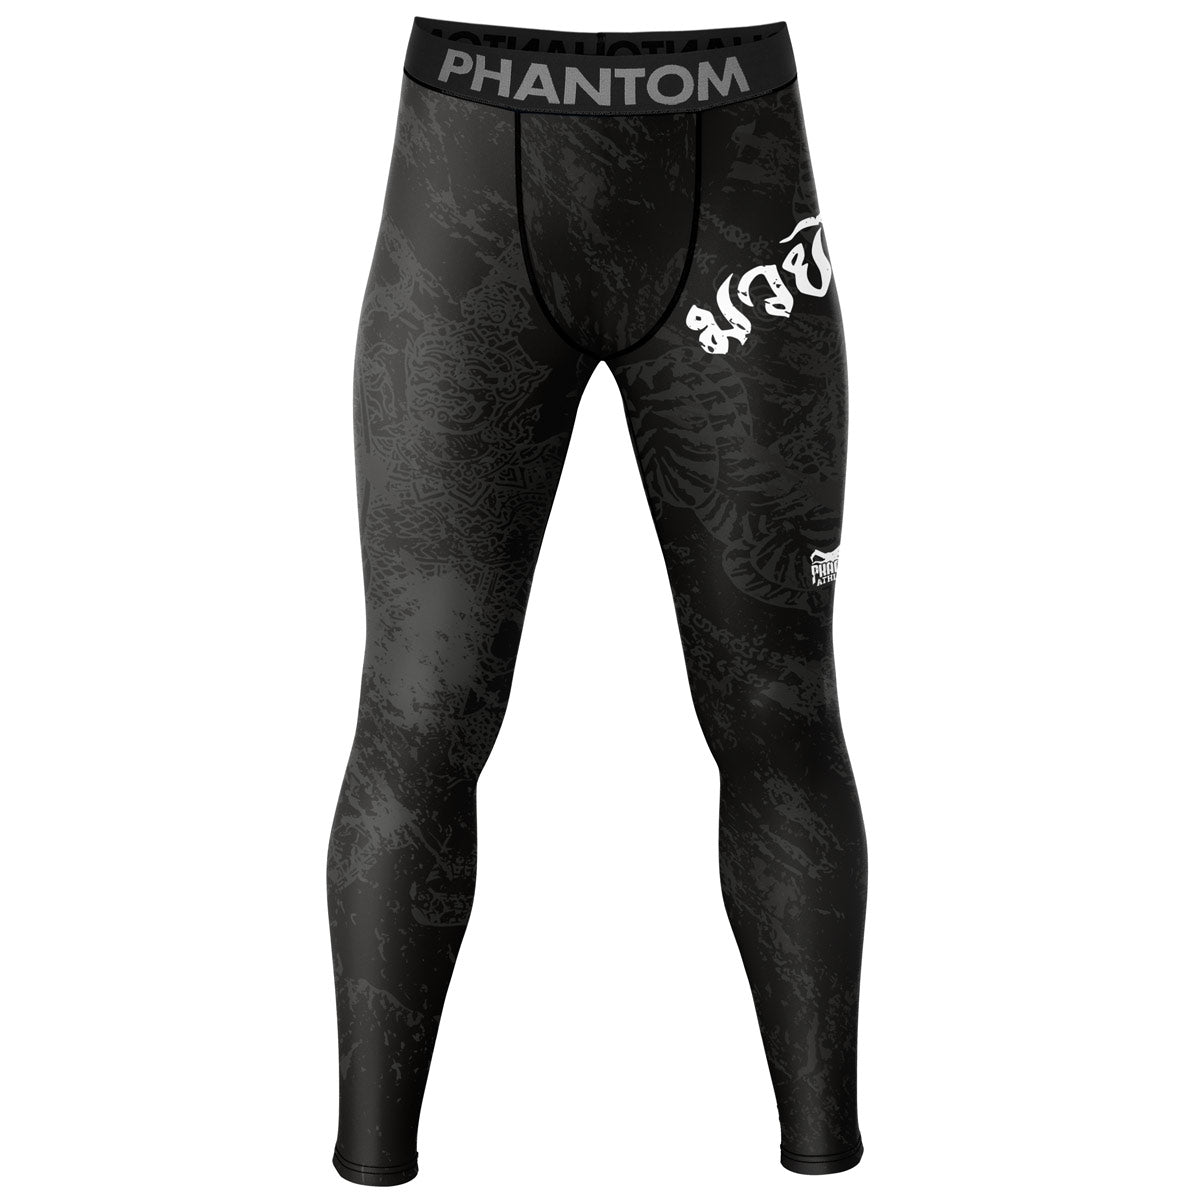 Phantom Compression Tights im Muay Thai Design für Kampfsport Training und Wettkampf. Mit thailändischem Design und Sak Yant Grafiken.